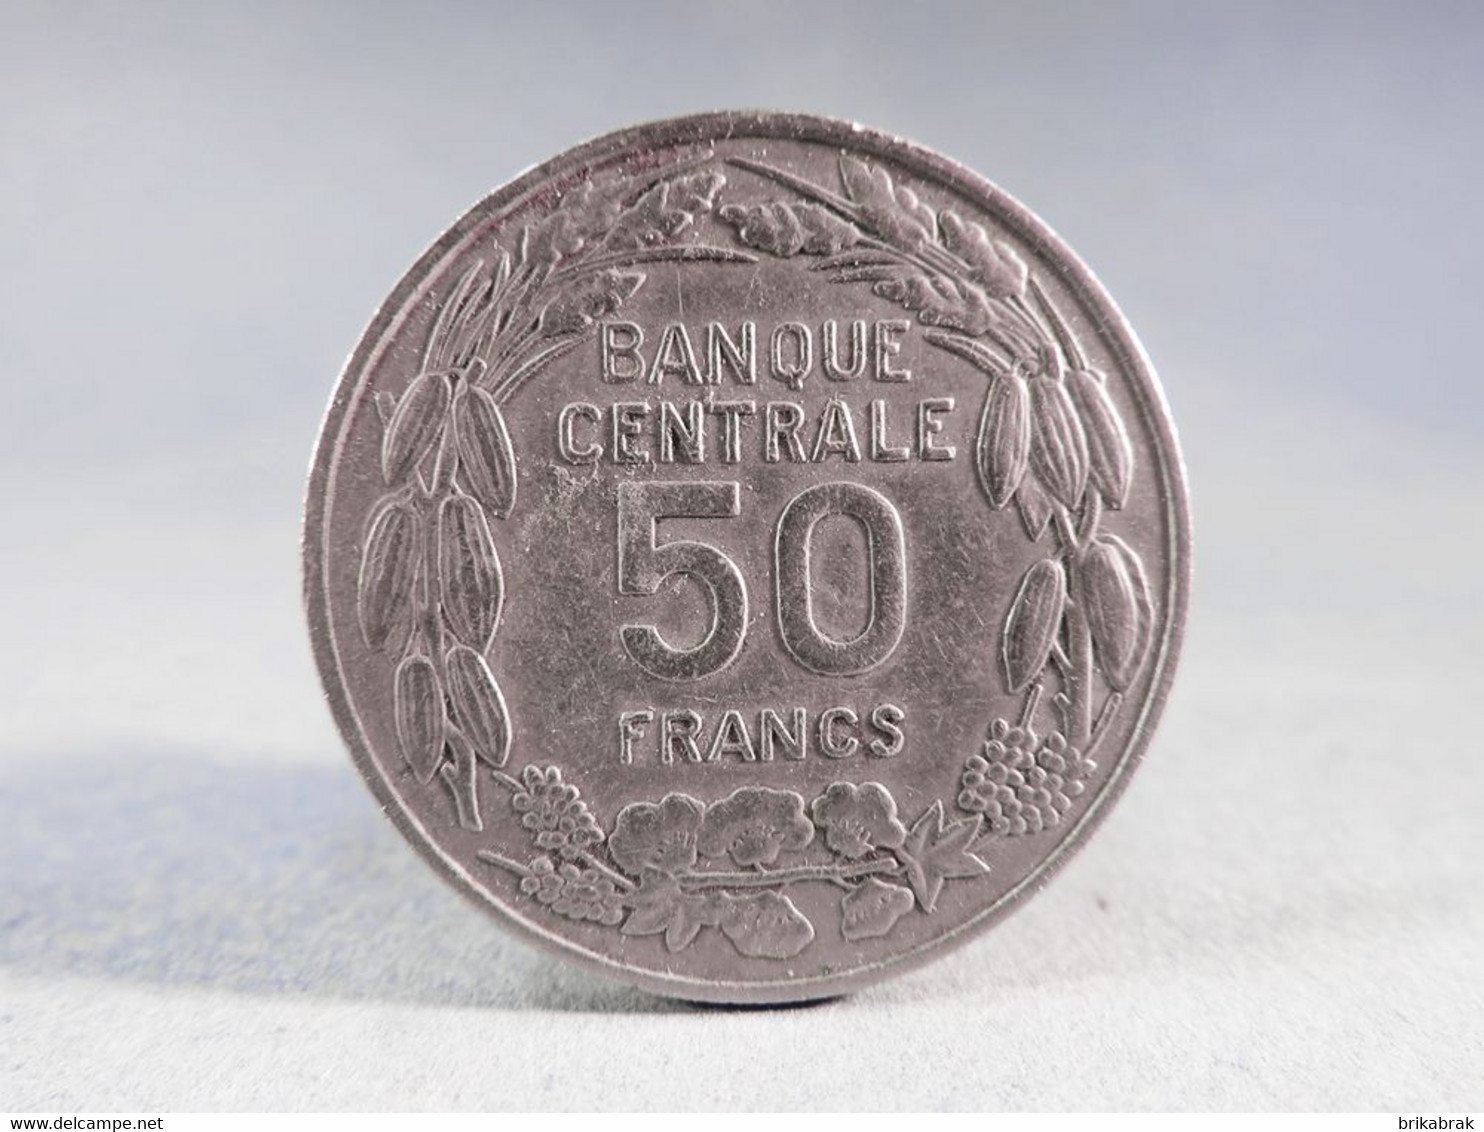 PIECE 50 FRANCS CAMEROUN 1960 - Monnaie Afrique Bazor